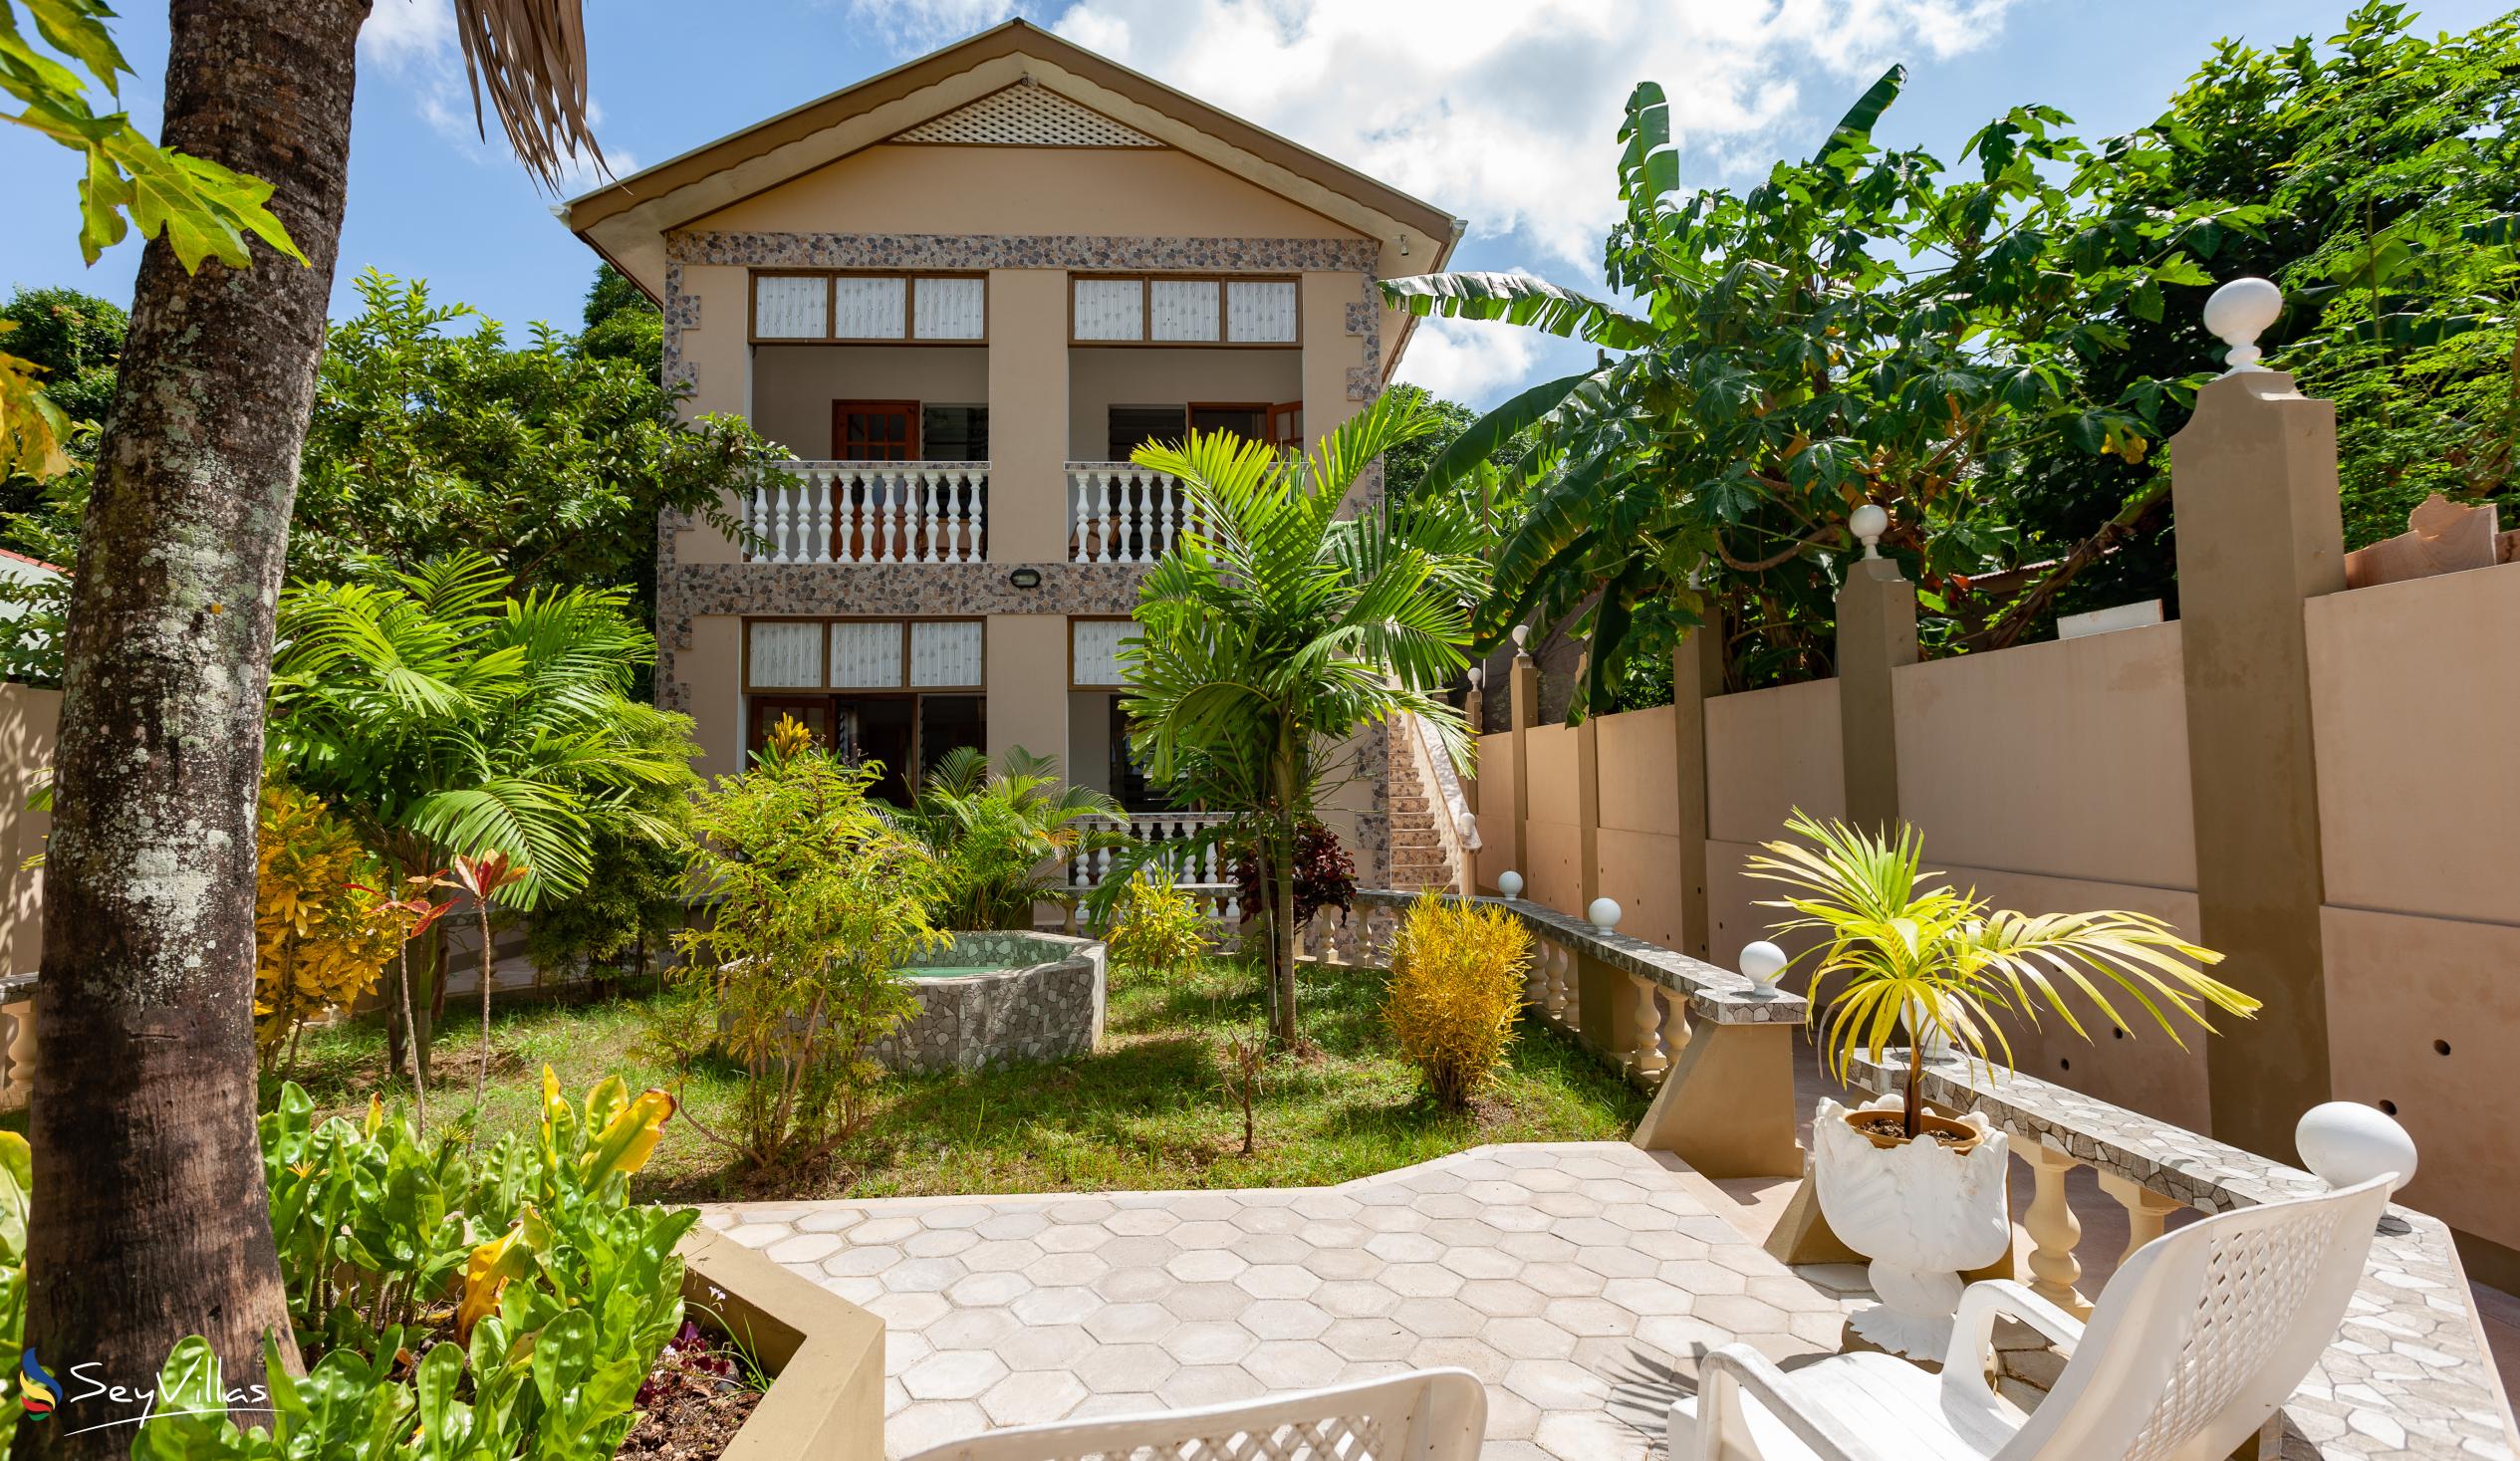 Foto 3: La Residence d'Almee - Aussenbereich - Praslin (Seychellen)